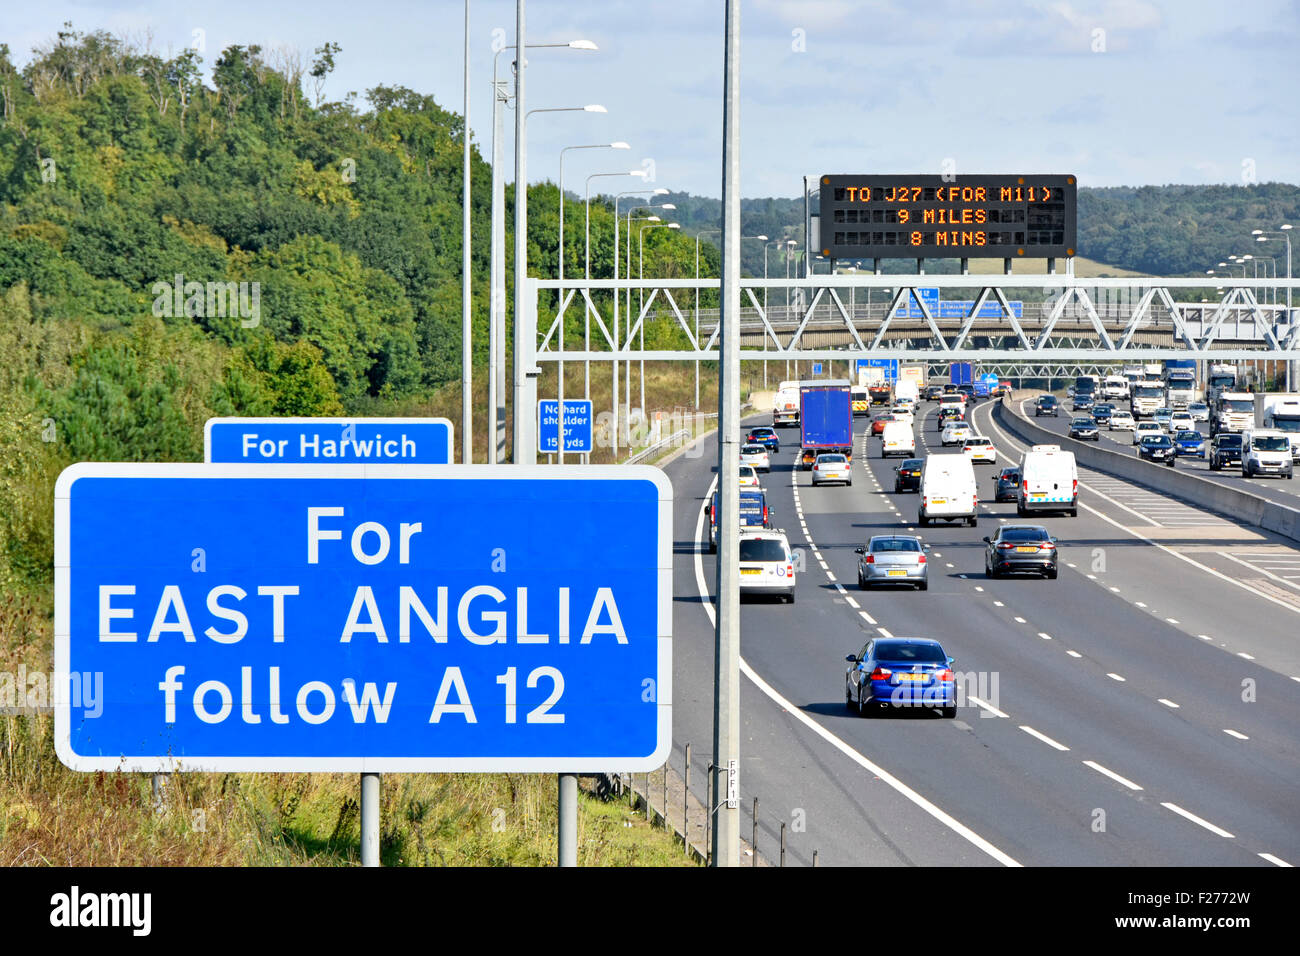 Autoroute M25 l'information électronique monté sur bras-signe avec blue classiques panneaux routiers pour East Anglia route Brentwood Essex England UK Banque D'Images